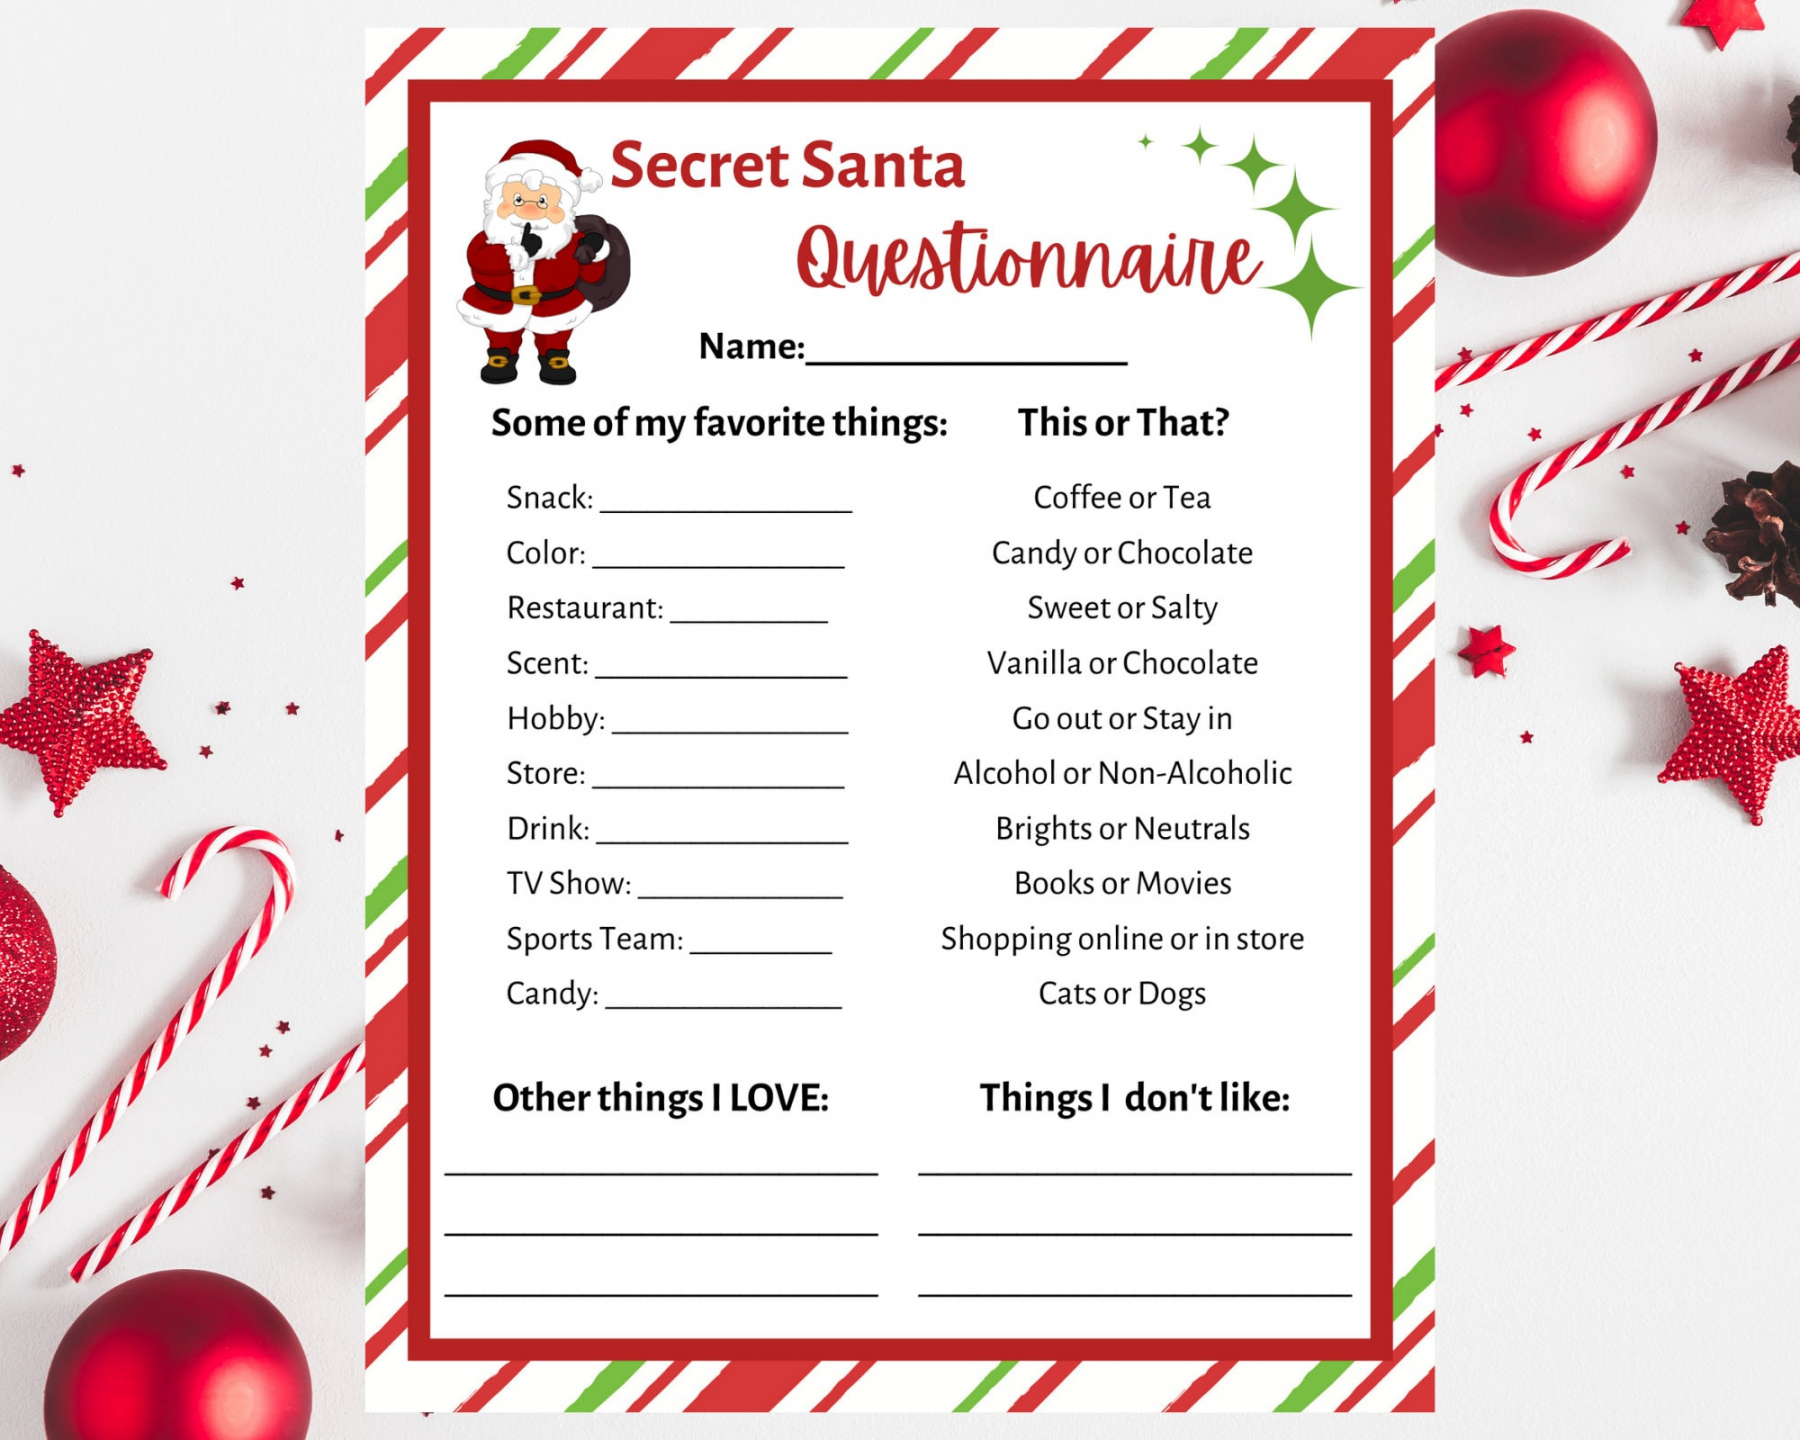 Secret Santa Questionnaire Printable. Secret Santa Form - Secret Santa Questionnaire Free Printable